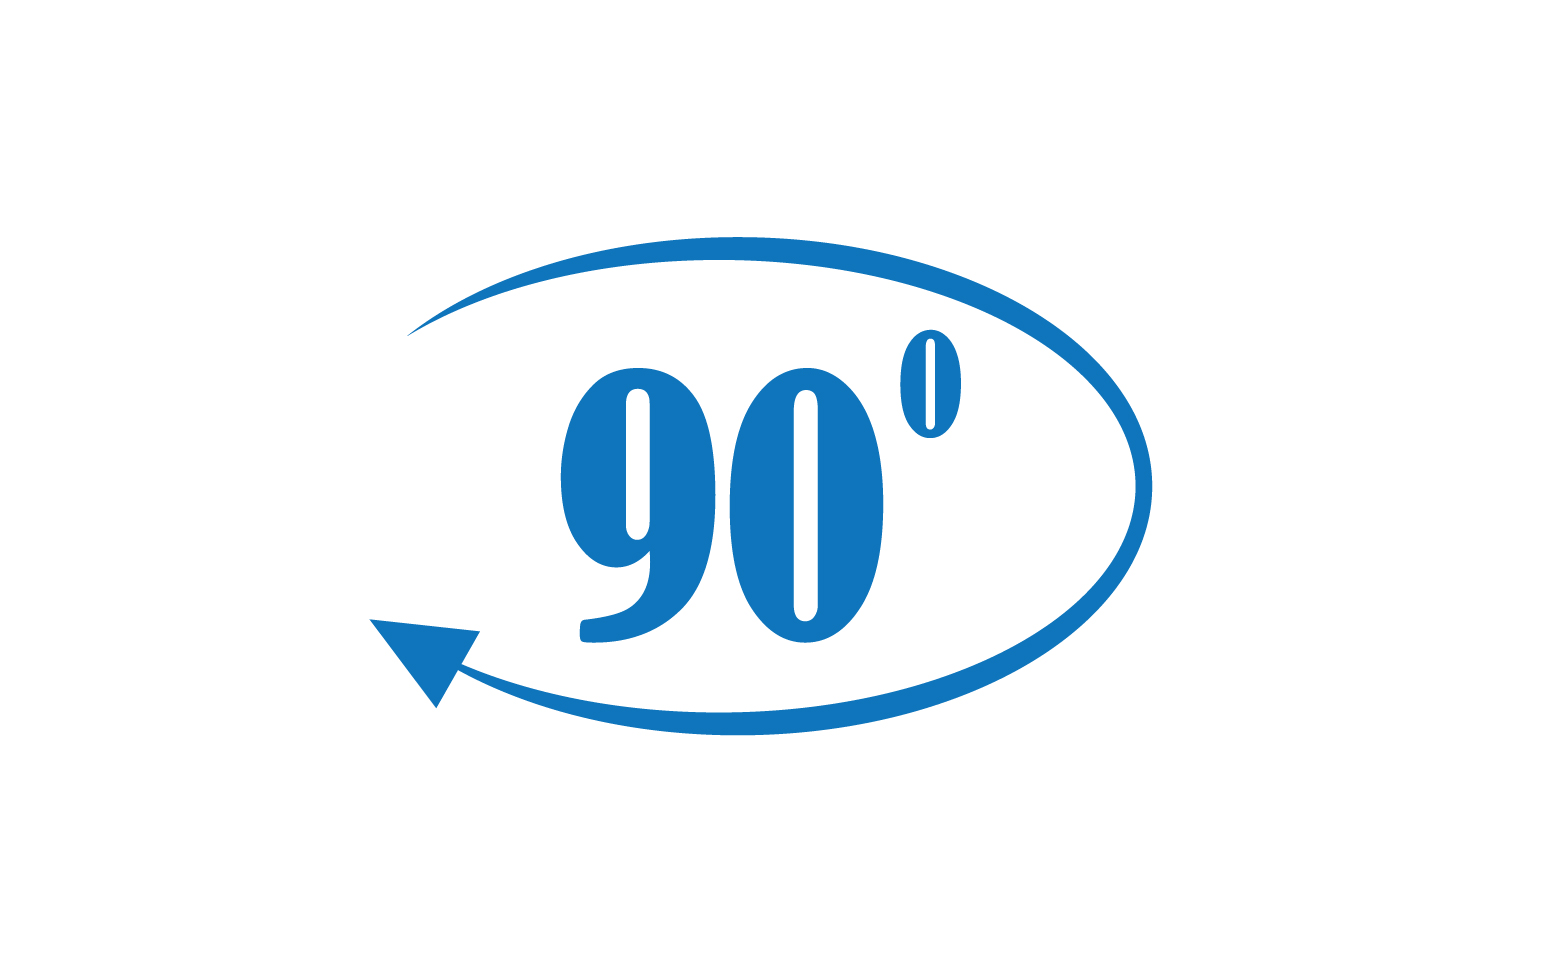 90 degree angle rotation icon symbol logo v5